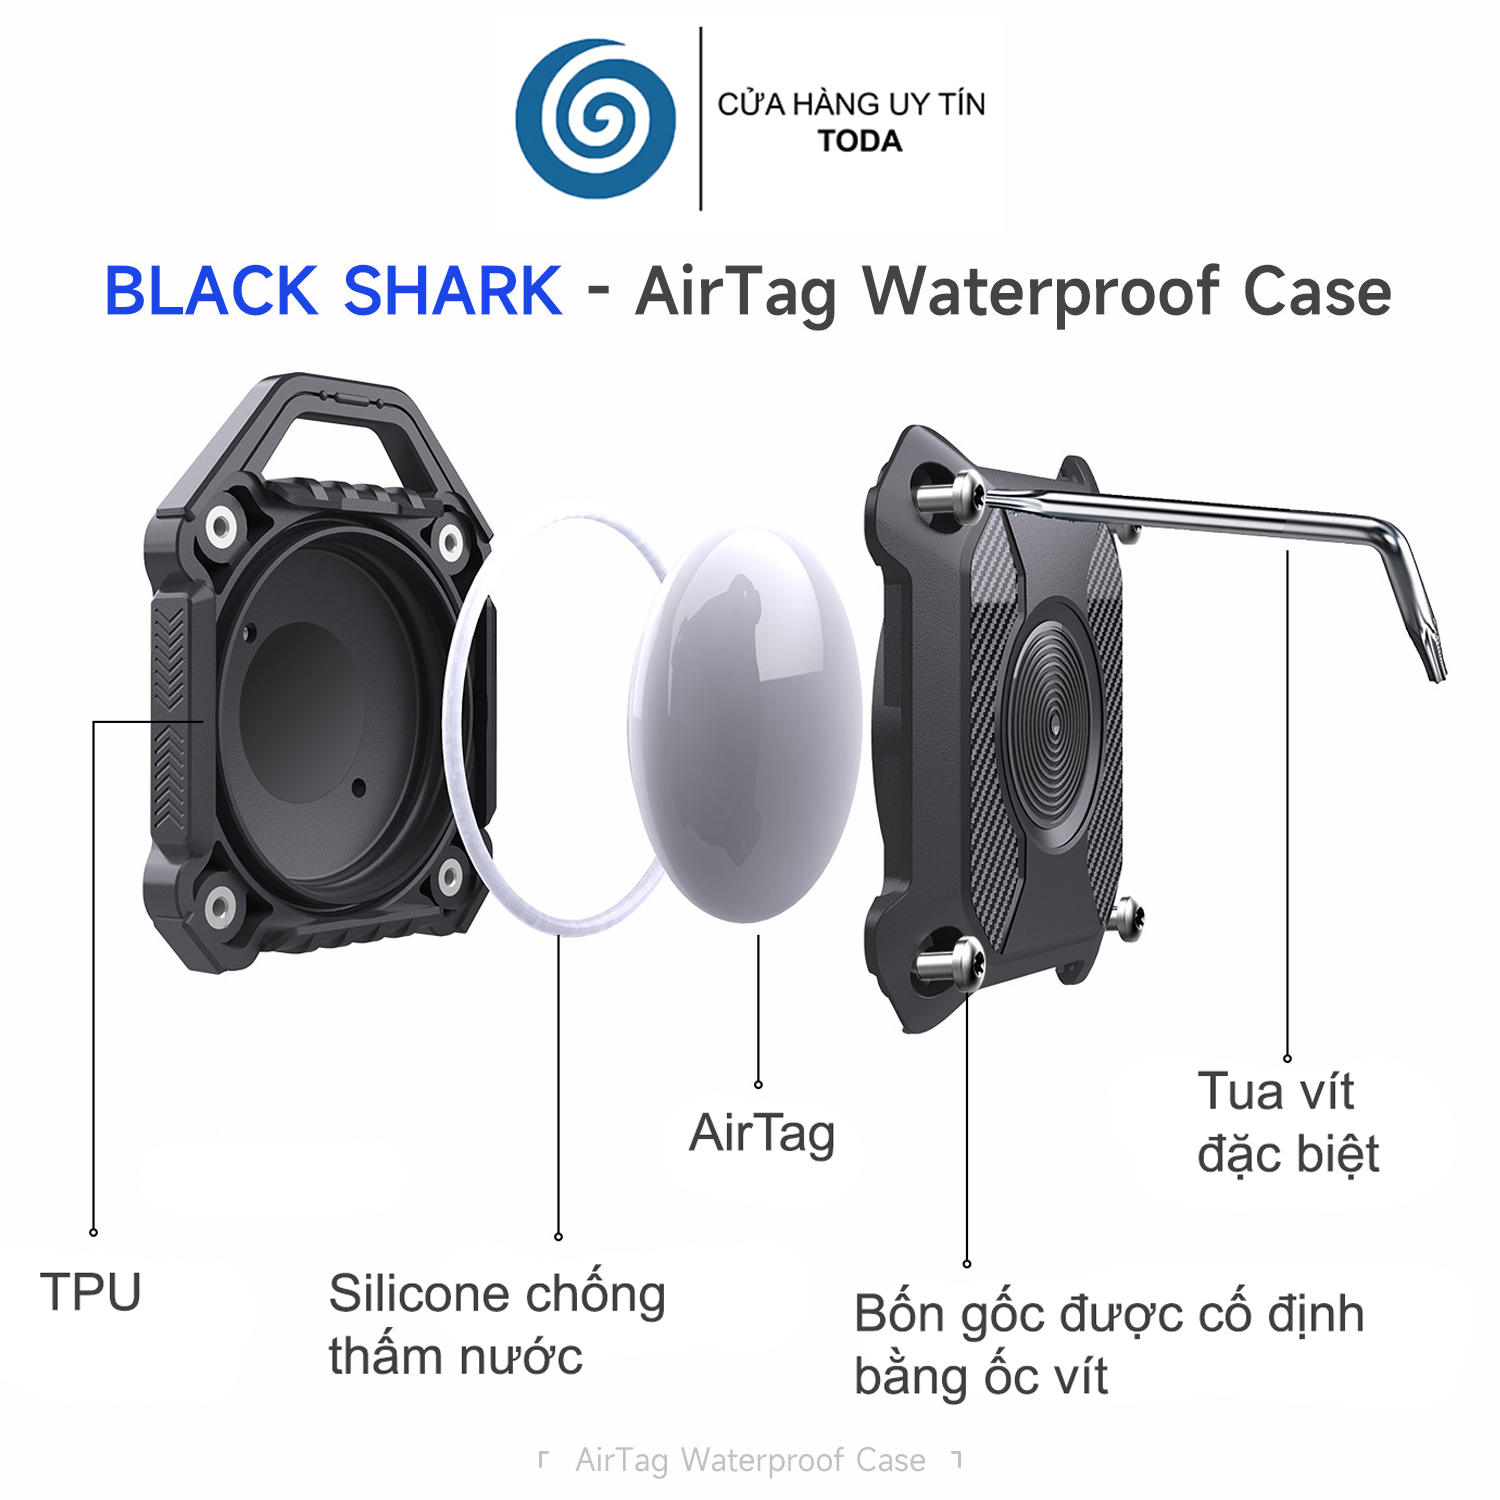 Ốp Bảo Vệ Toàn Diện Chống Nước Chống Va Đập Black Shark cho AirTag - Hàng Chính Hãng